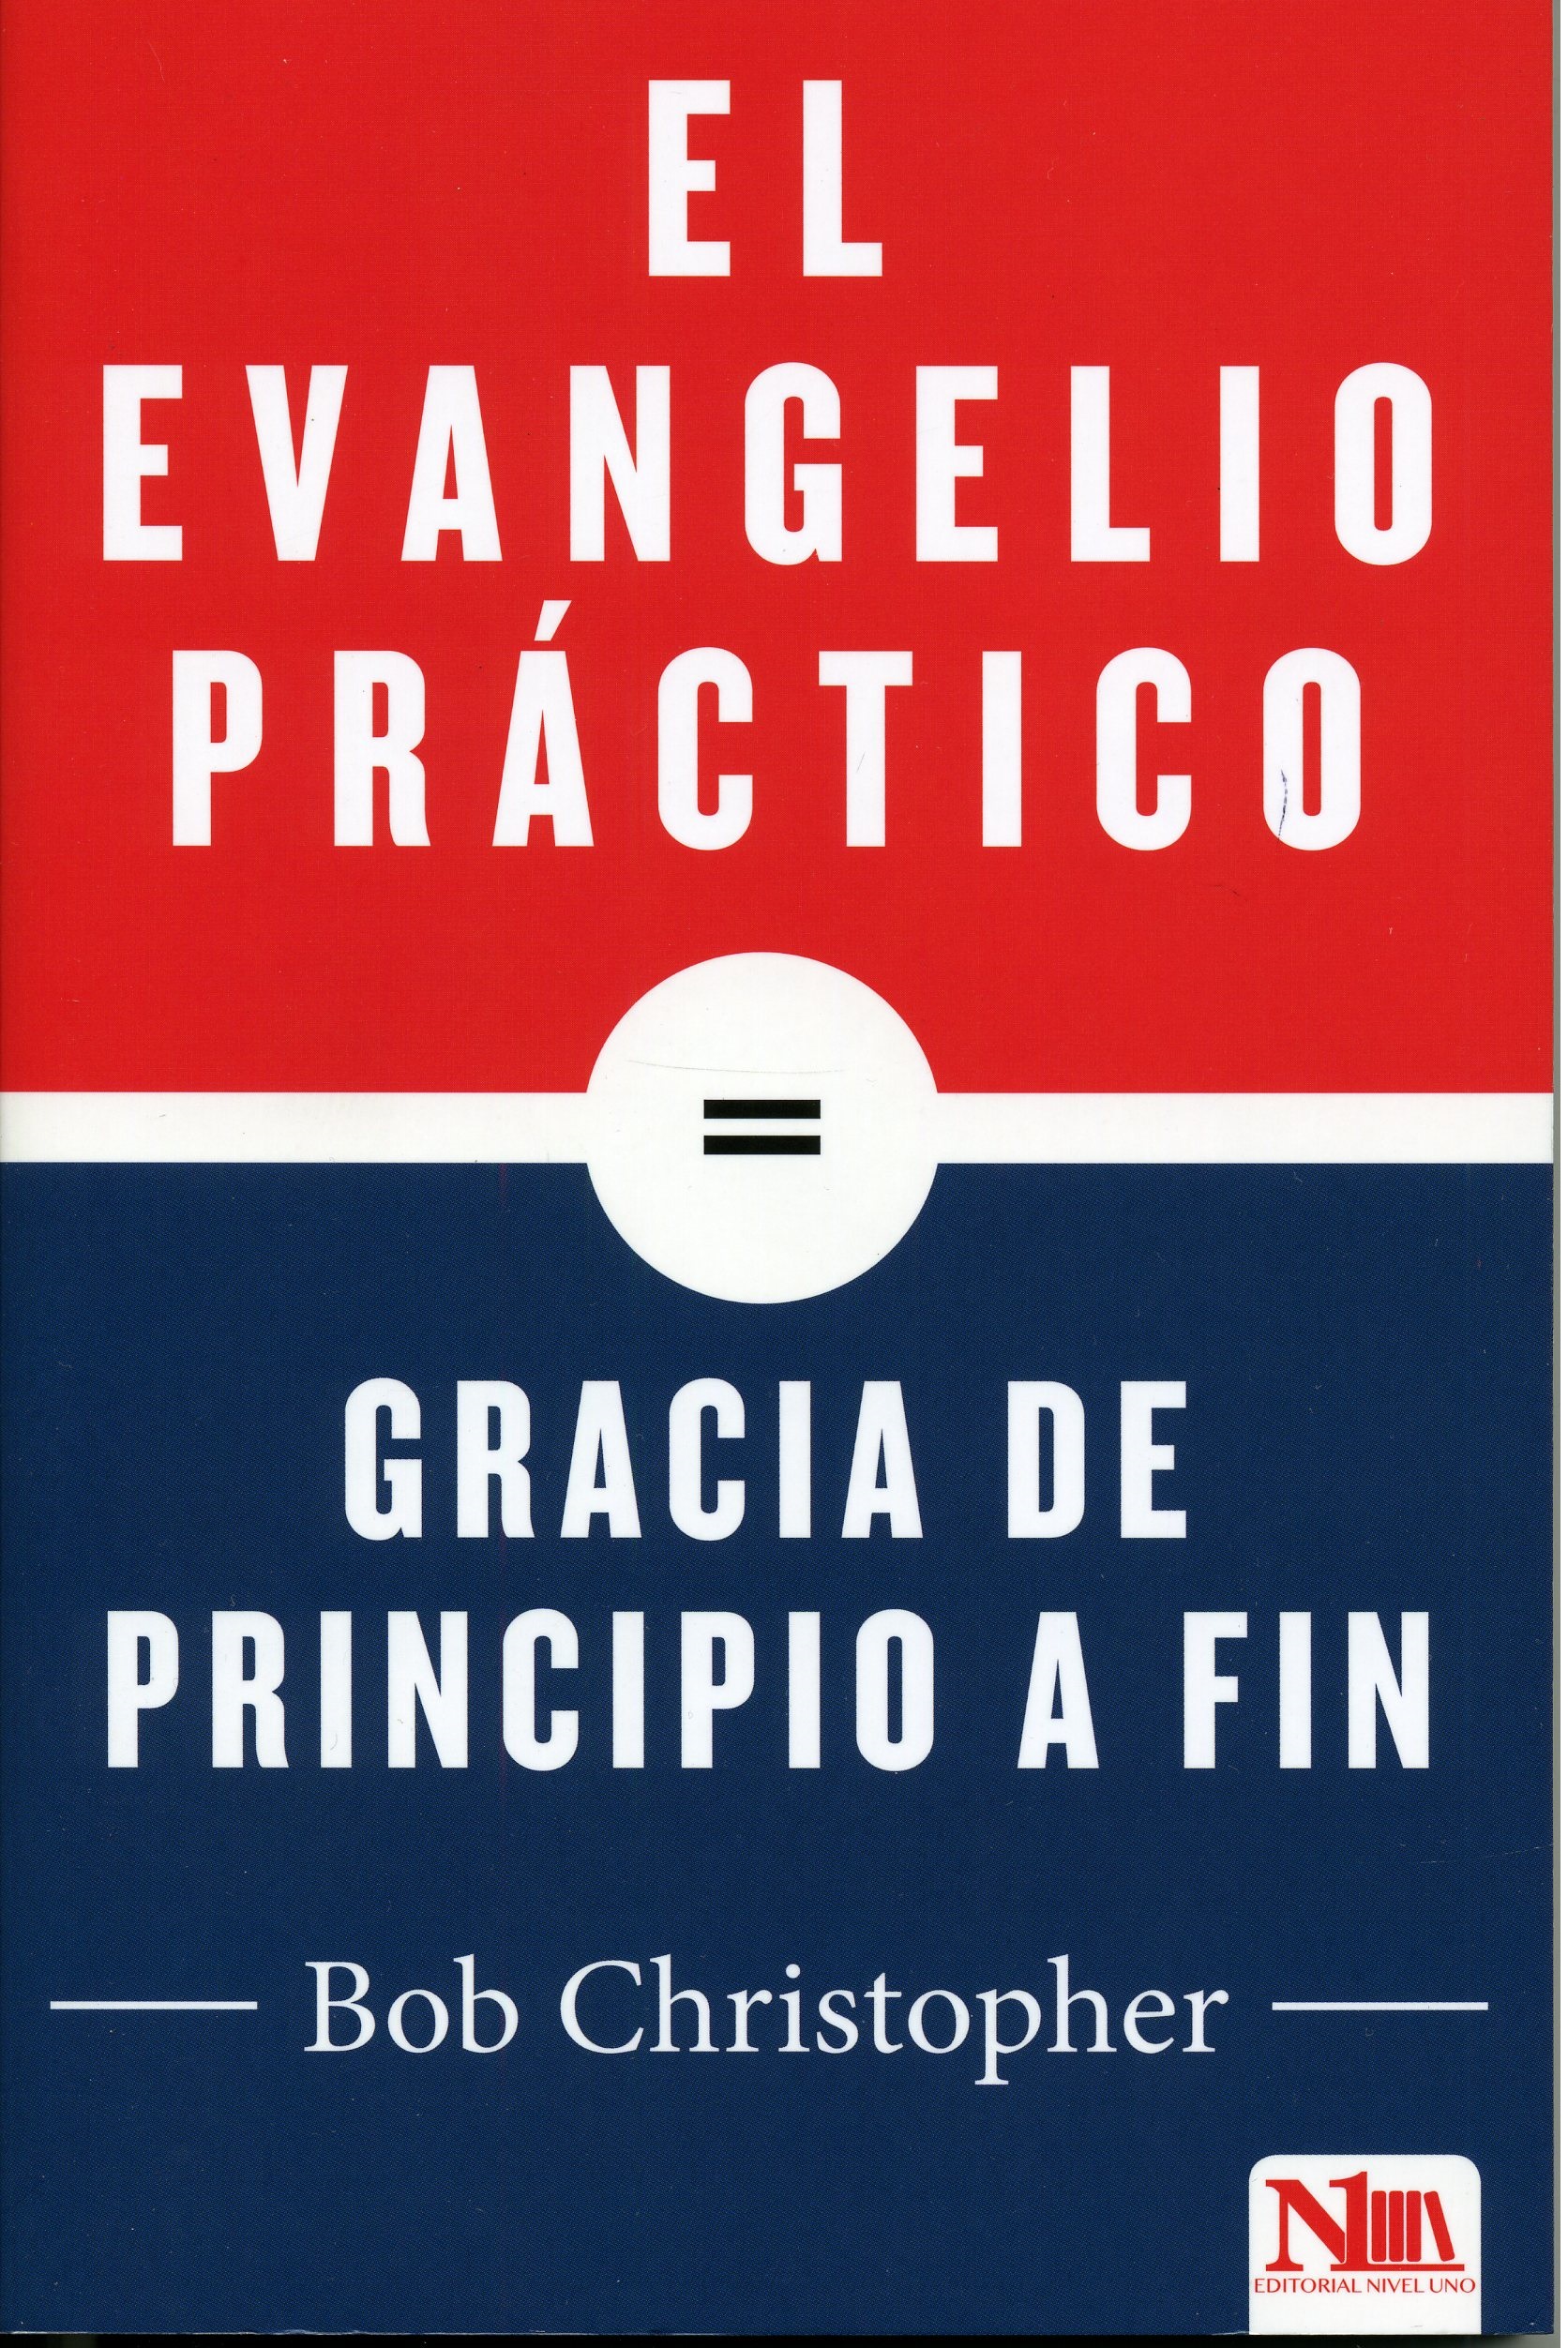 Evangelio Práctico Gracia de Principio a Fin